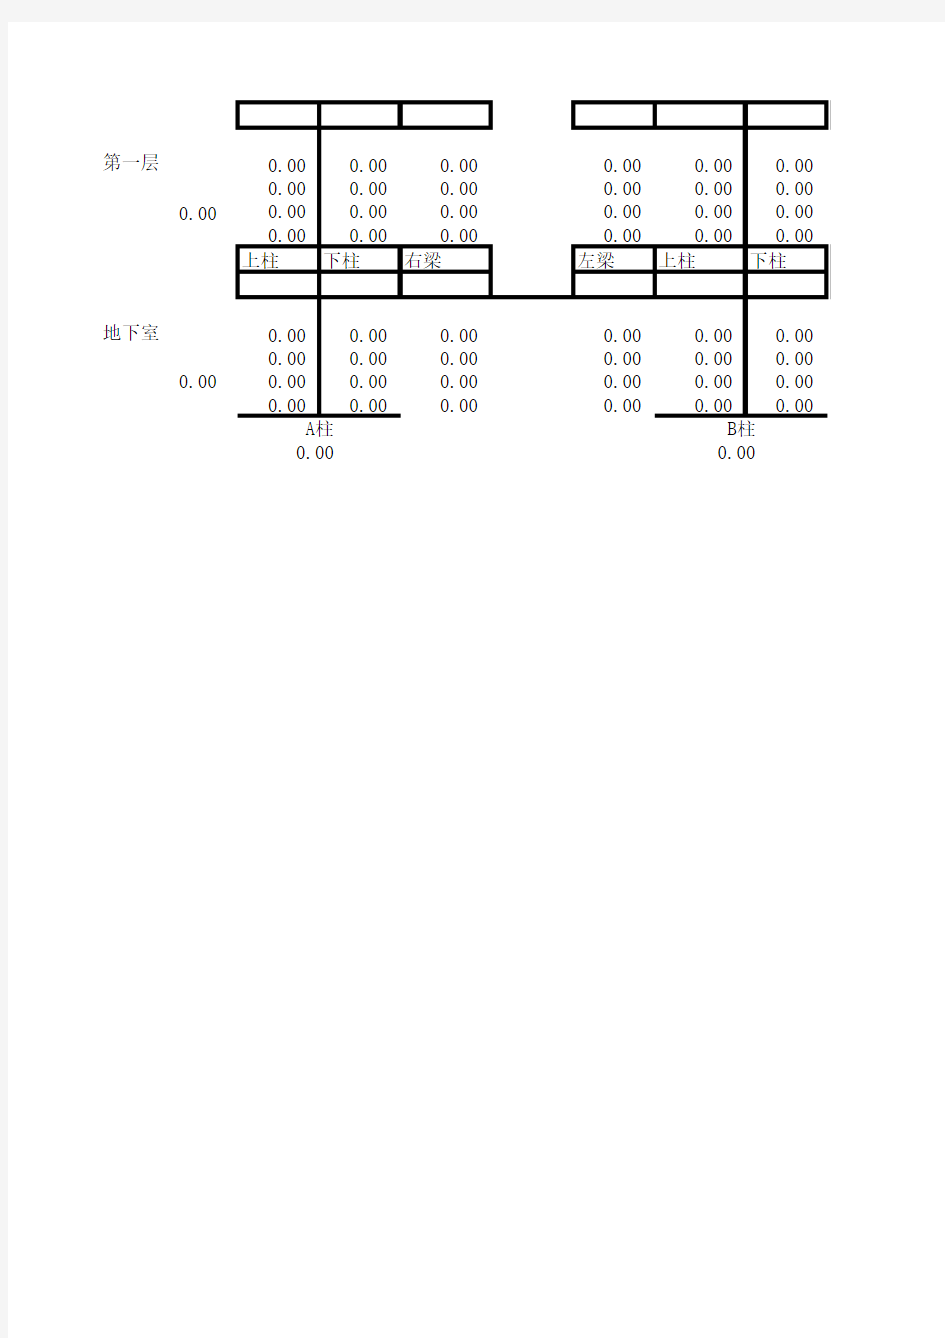 恒载作用下横向框架弯矩二次分配法计算表附表